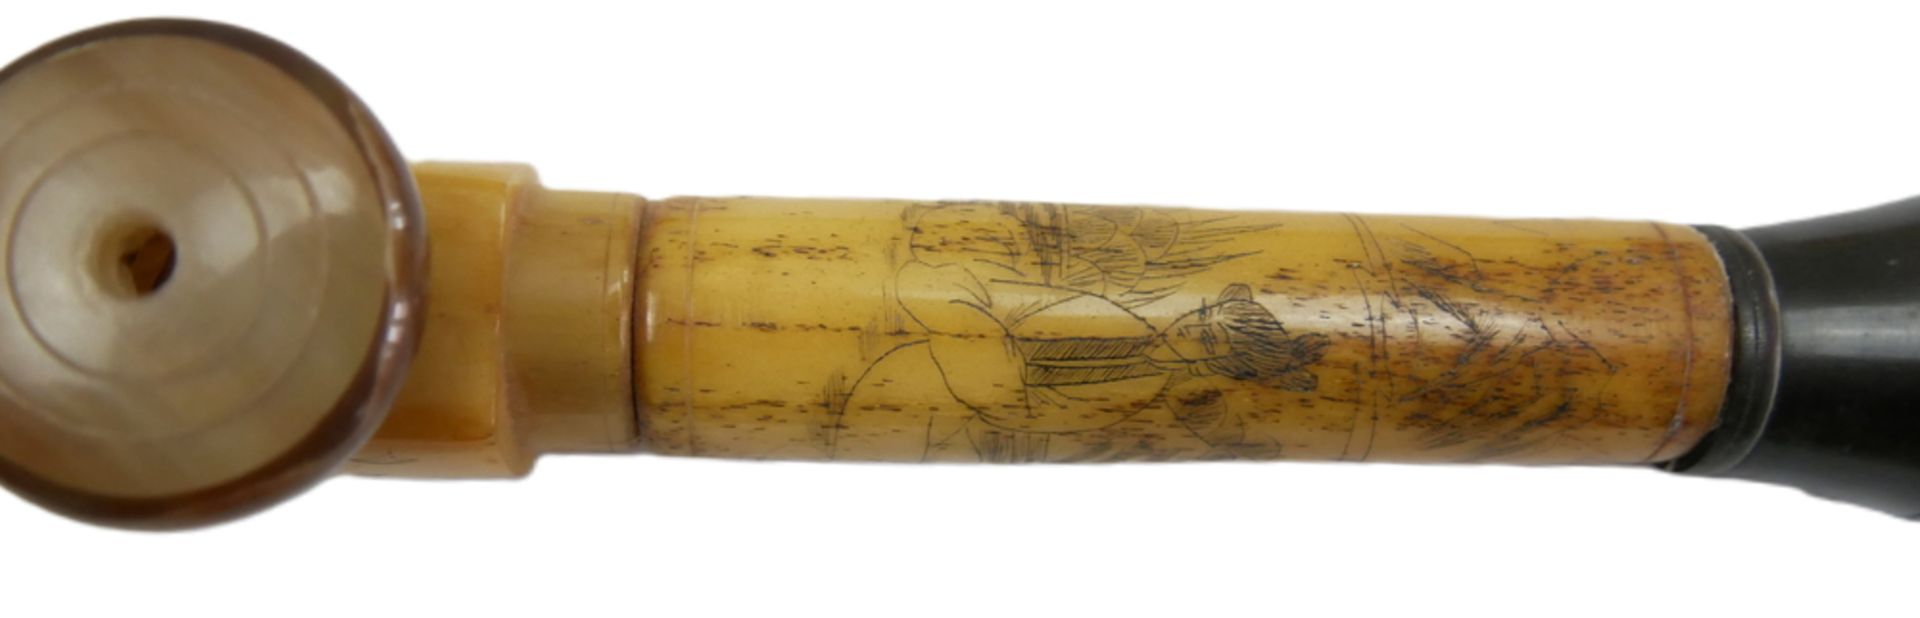 Chinesische Opiumpfeife aus Knochen, geschnitzt und verziert mit Geishas. Länge ca. 54 cm - Image 3 of 3